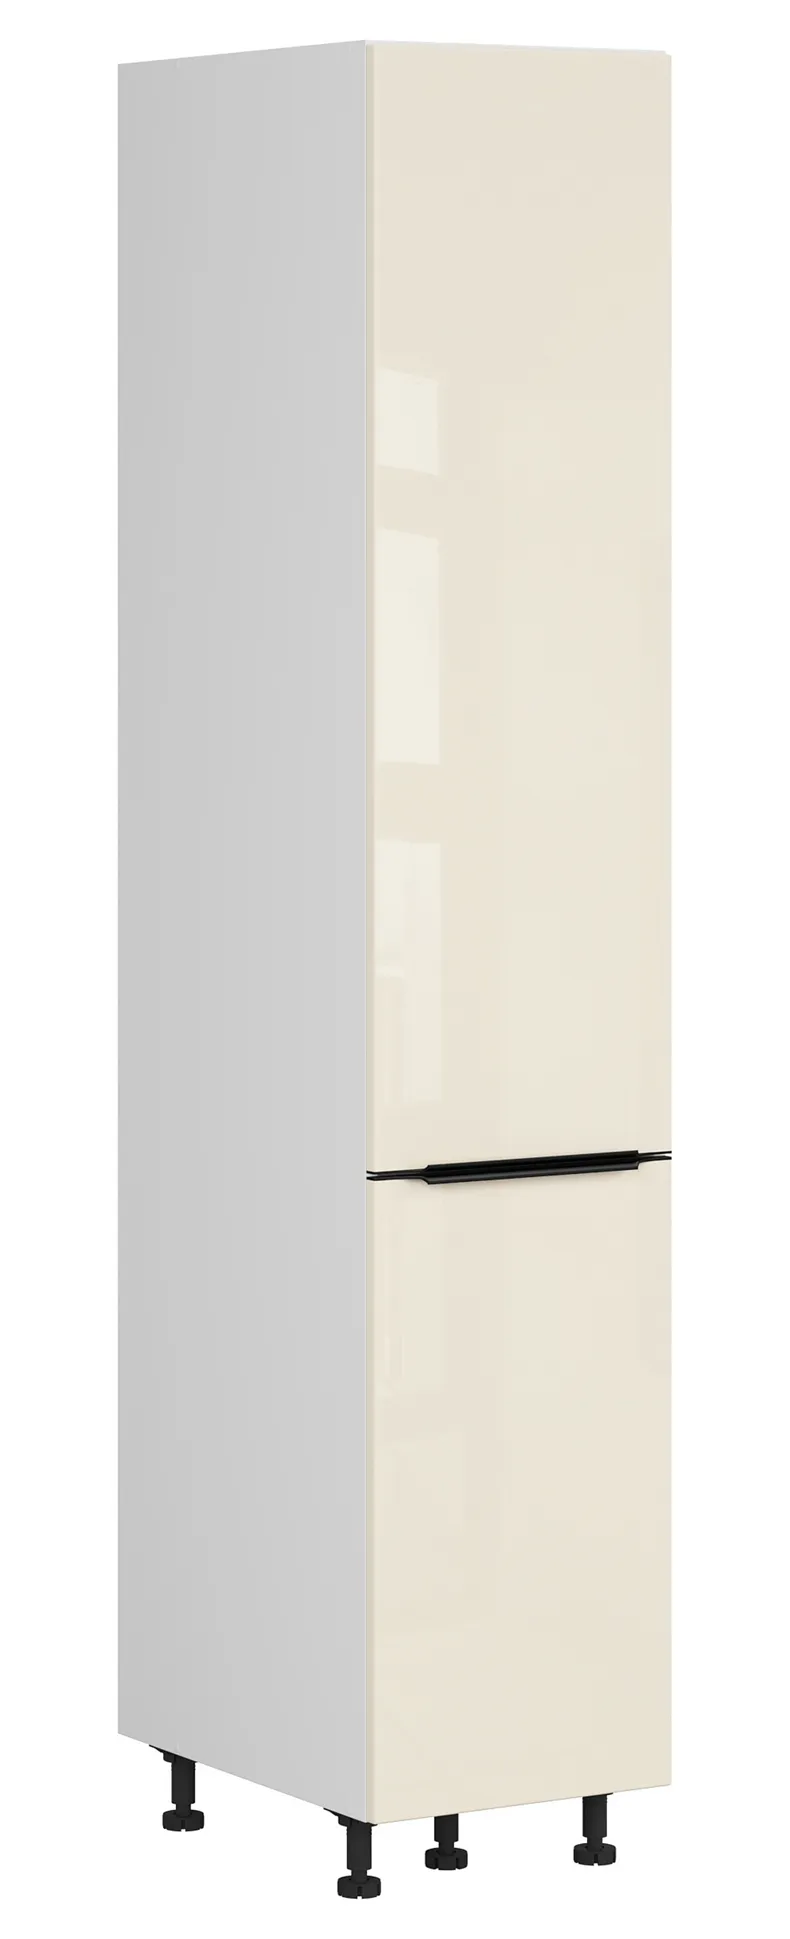 BRW Кухонный шкаф Sole L6 высотой 40 см с корзиной для груза магнолия жемчуг, альпийский белый/жемчуг магнолии FM_DC_40/207_CC-BAL/MAPE фото №2